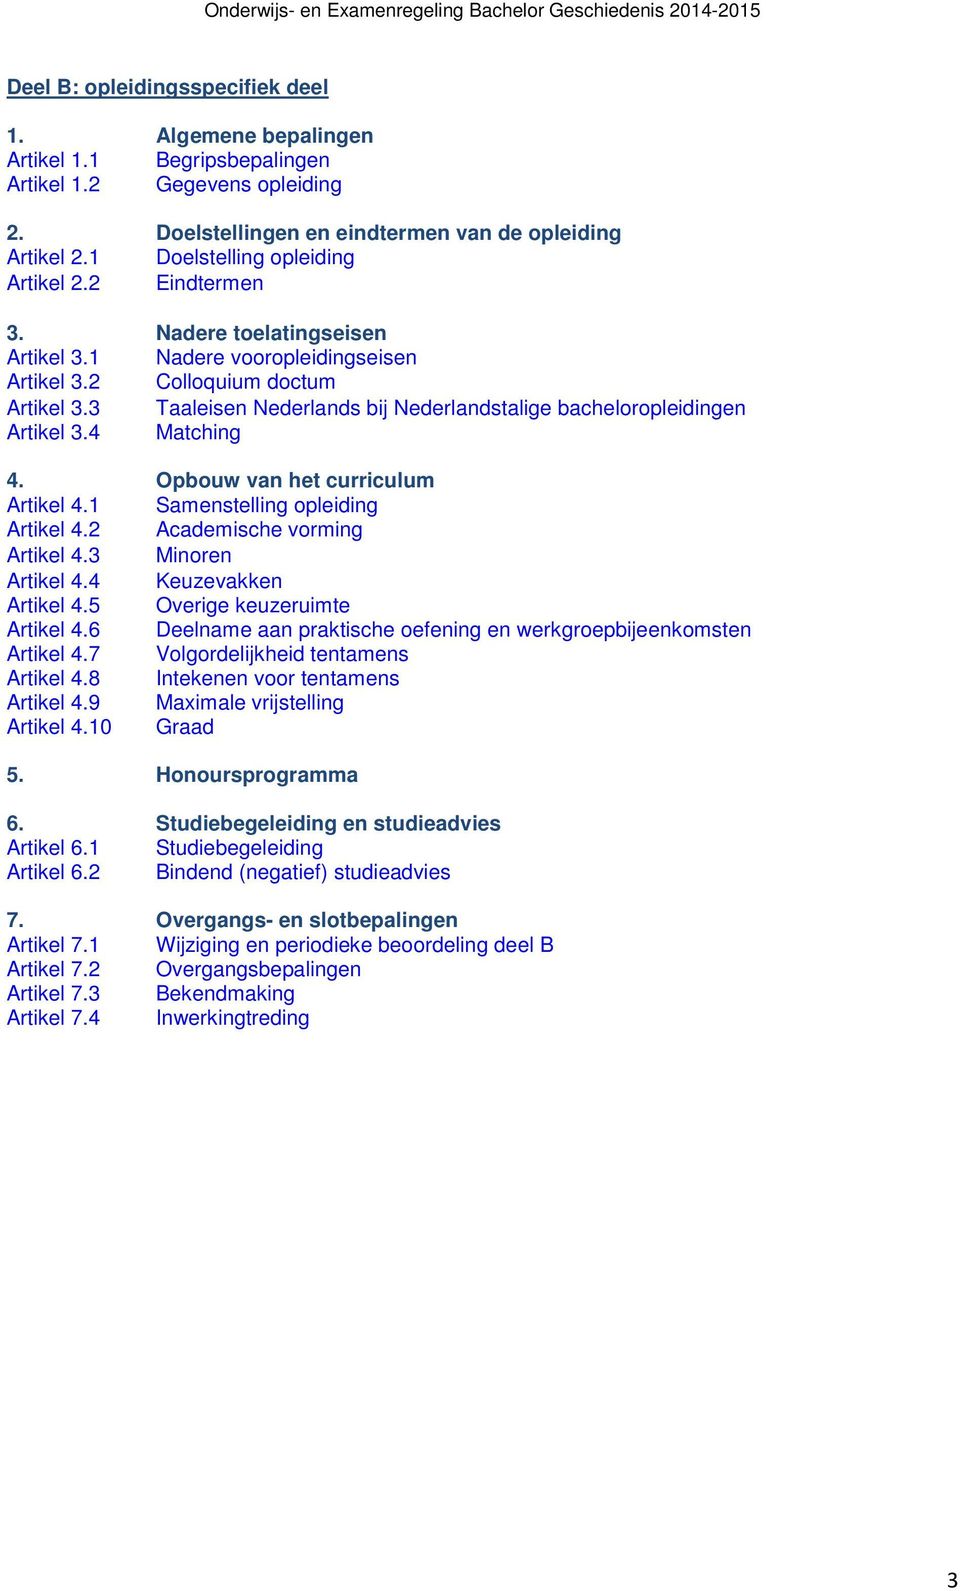 3 Taaleisen Nederlands bij Nederlandstalige bacheloropleidingen Artikel 3.4 Matching 4. Opbouw van het curriculum Artikel 4.1 Samenstelling opleiding Artikel 4.2 Academische vorming Artikel 4.